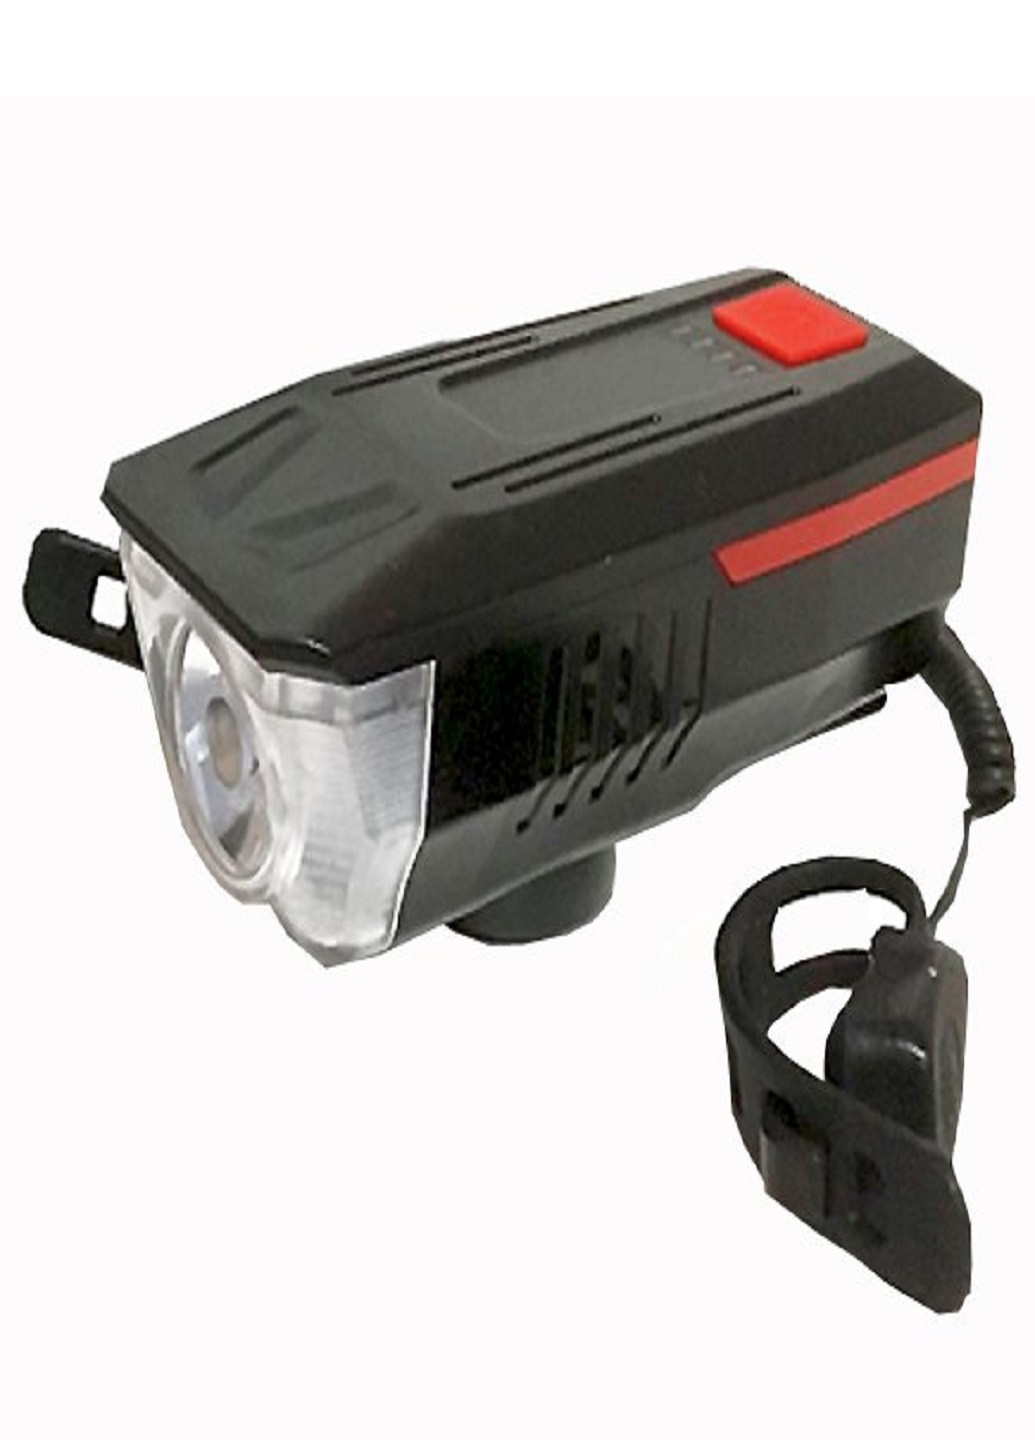 Универсальный аккумуляторный фонарь велосипедный LY-16 влагостойкий со звонком с креплением на руль Красный VTech (253495646)